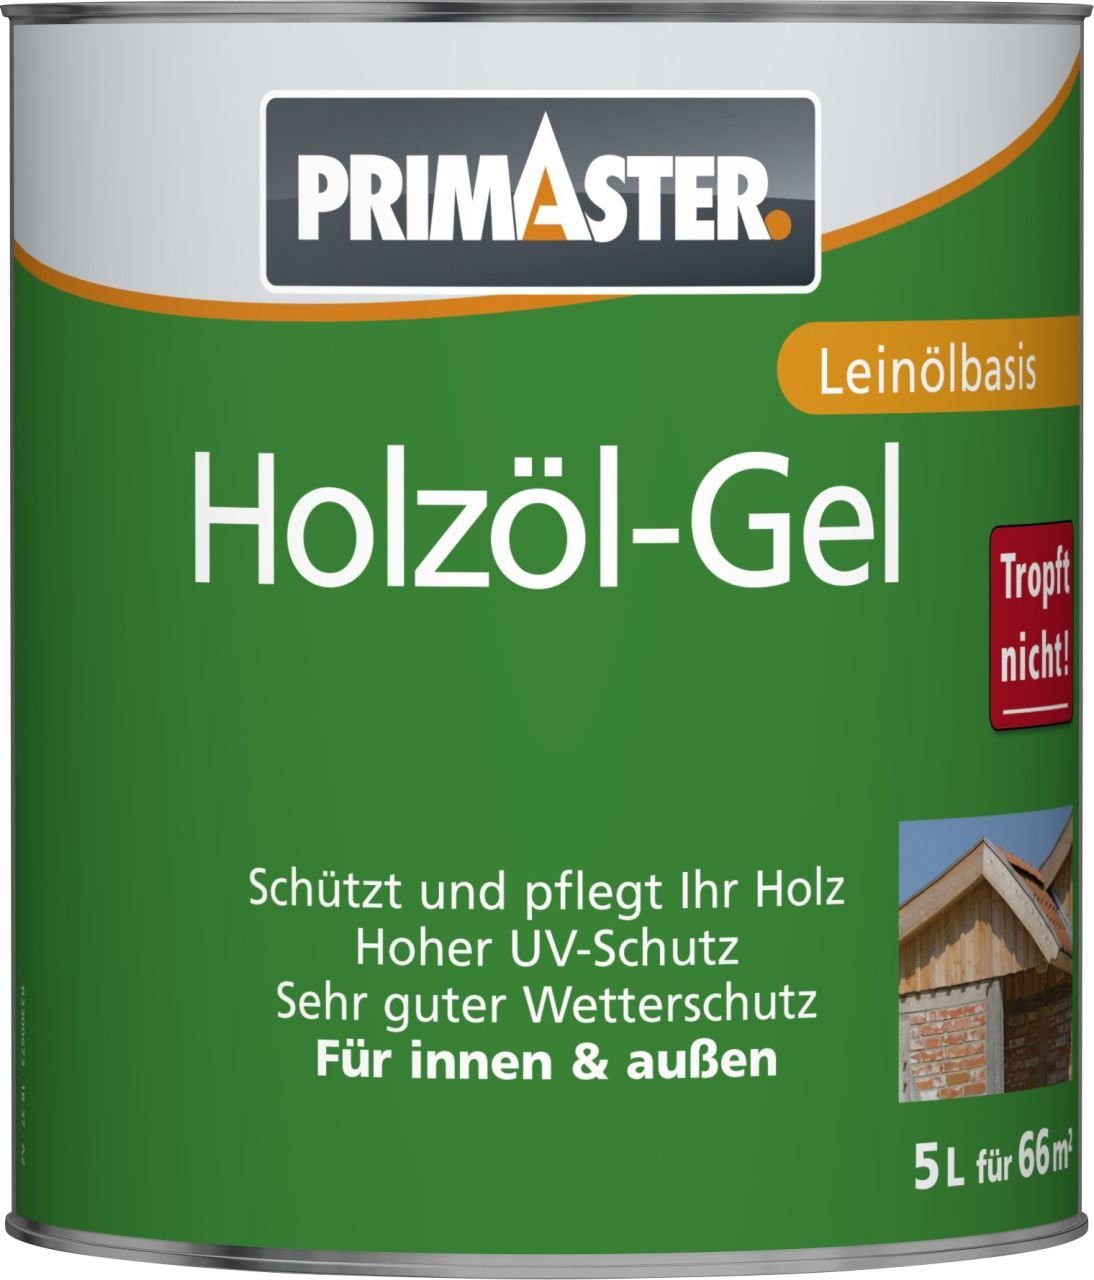 eiche Hartholzöl Primaster L Holzöl-Gel Primaster 5